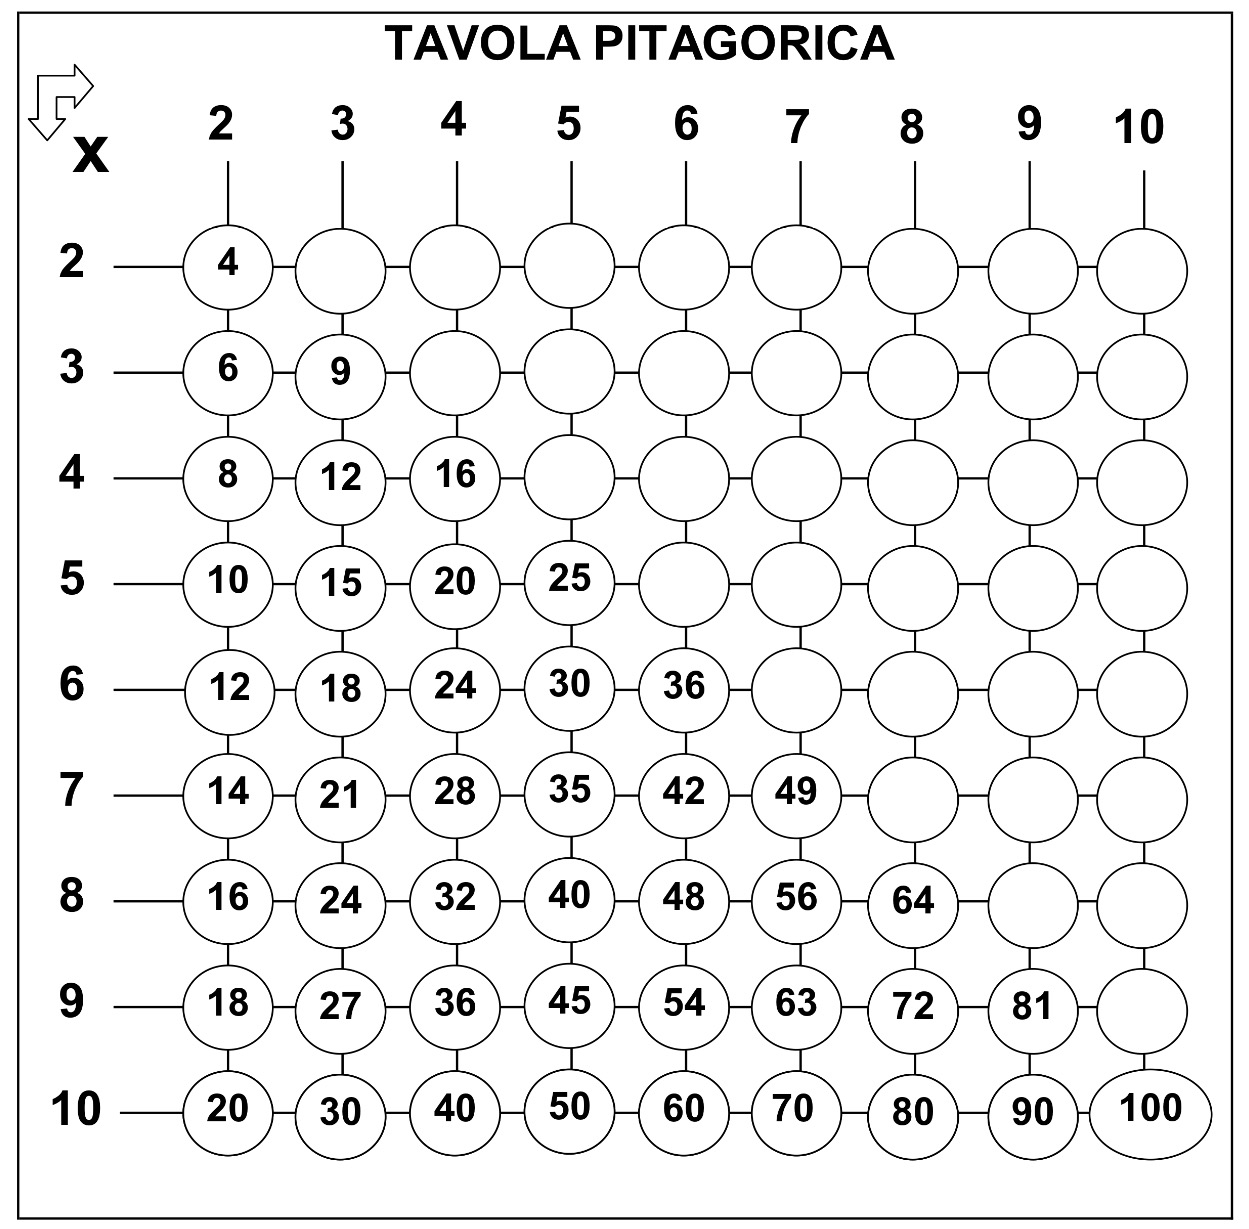 SECONDO SUPPORTO: Tavola pitagorica semplificata – Matematichiamoblog